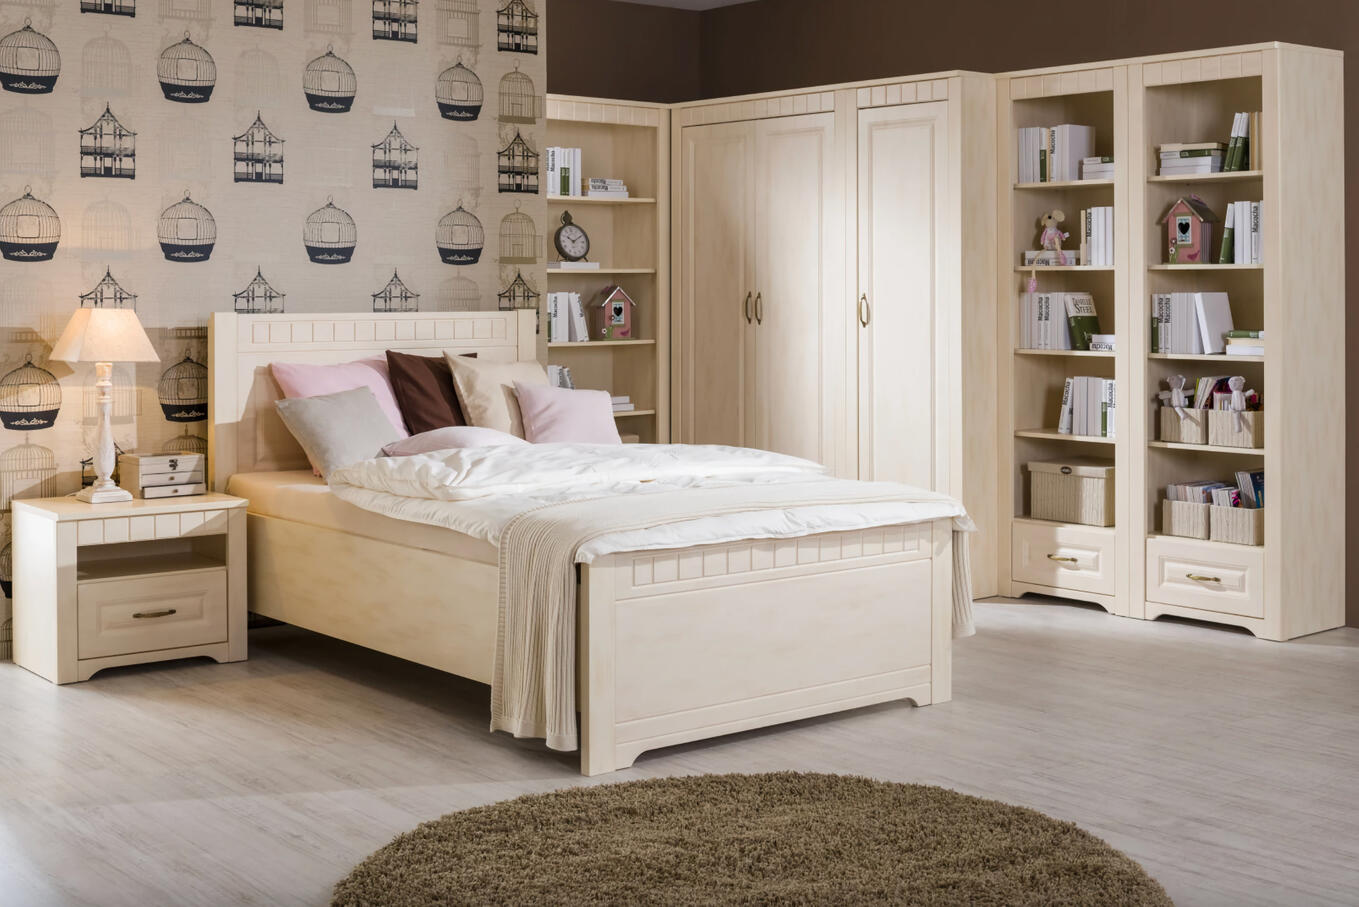 Útulná spálňa Decodom Tirol vo farbe vanilka patina, s prírodným dreveným nábytkom, pohodlnou posteľou a knižnicou.